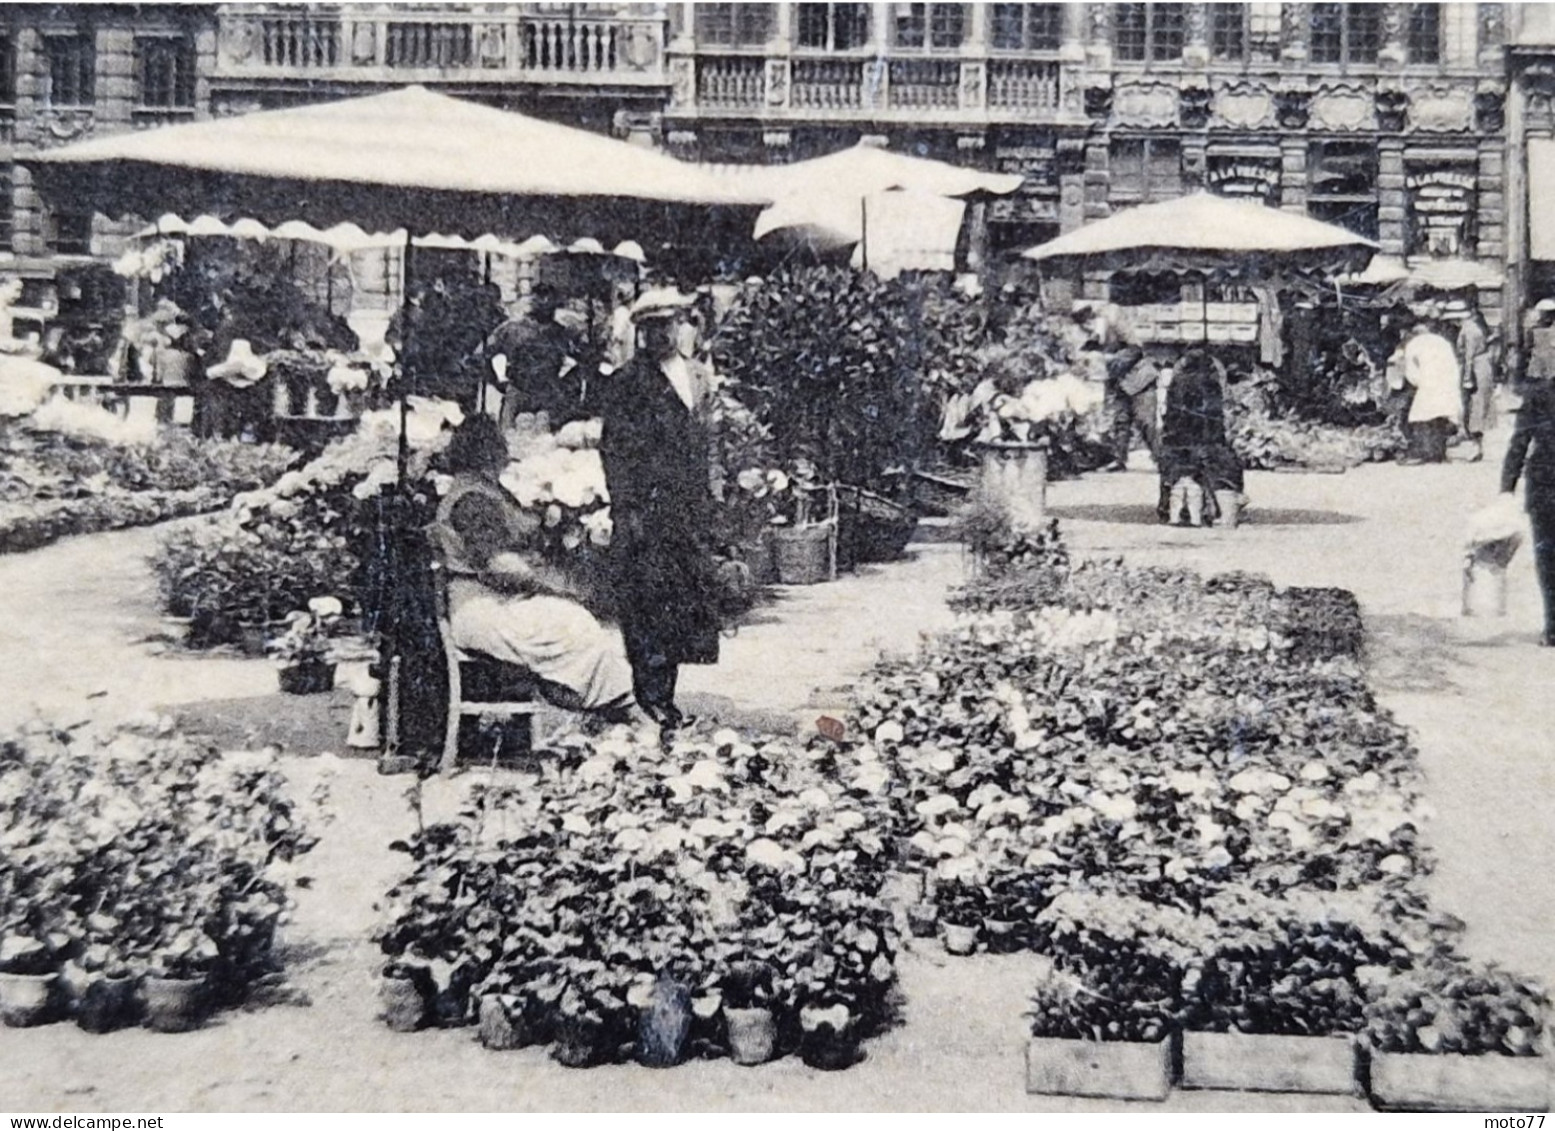 BELGIQUE - Bruxelles - Grand'place Marché Aux Fleurs - CPA Carte Postale Ancienne - Vers 1960 - Places, Squares